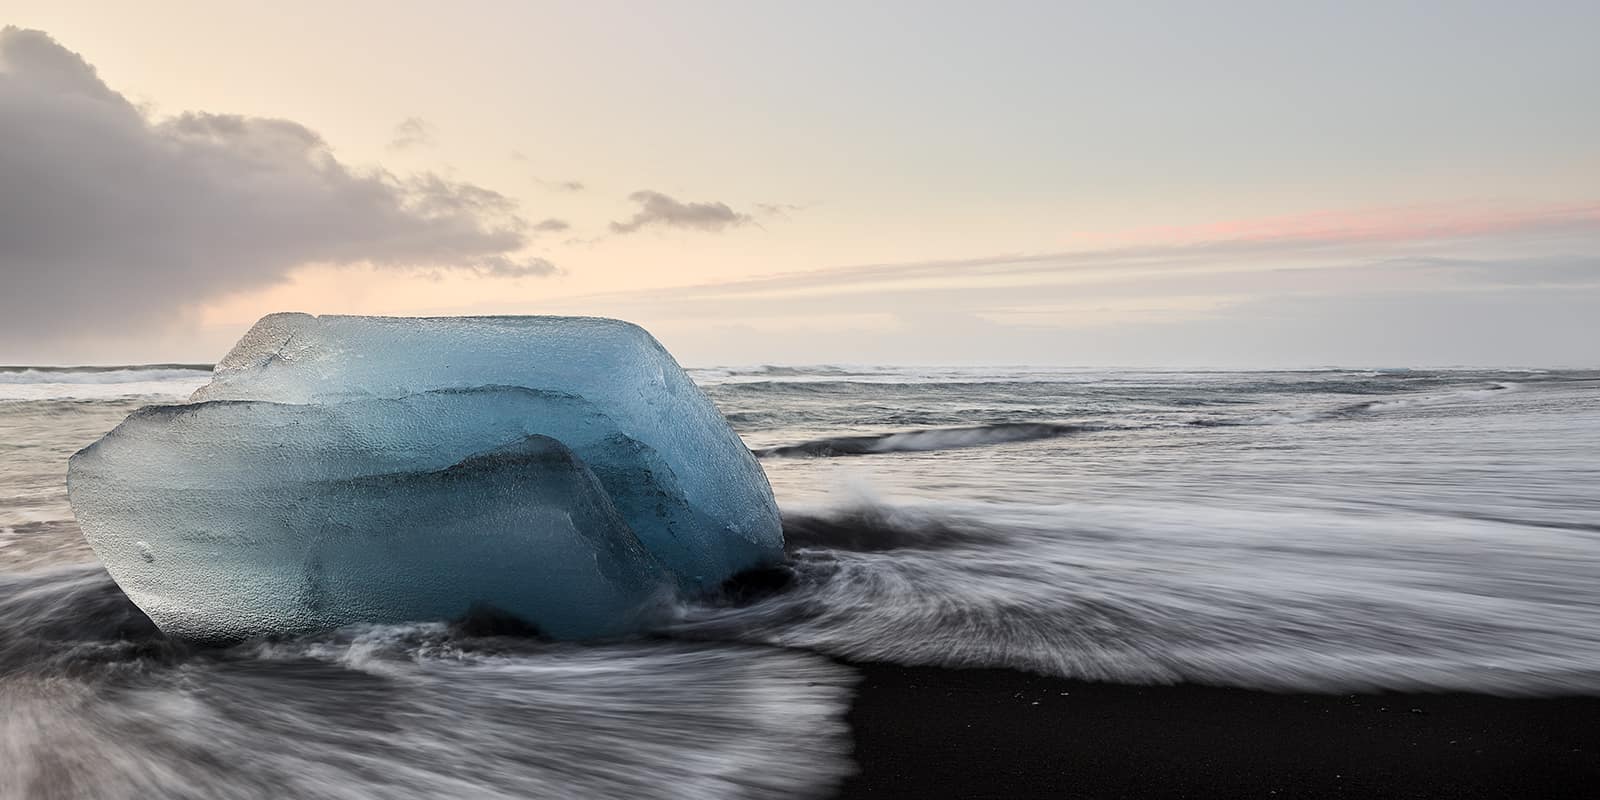 "Transience" Bild von Eisbrocken die am Strandliegen, mystische Farben in allen Blautönen